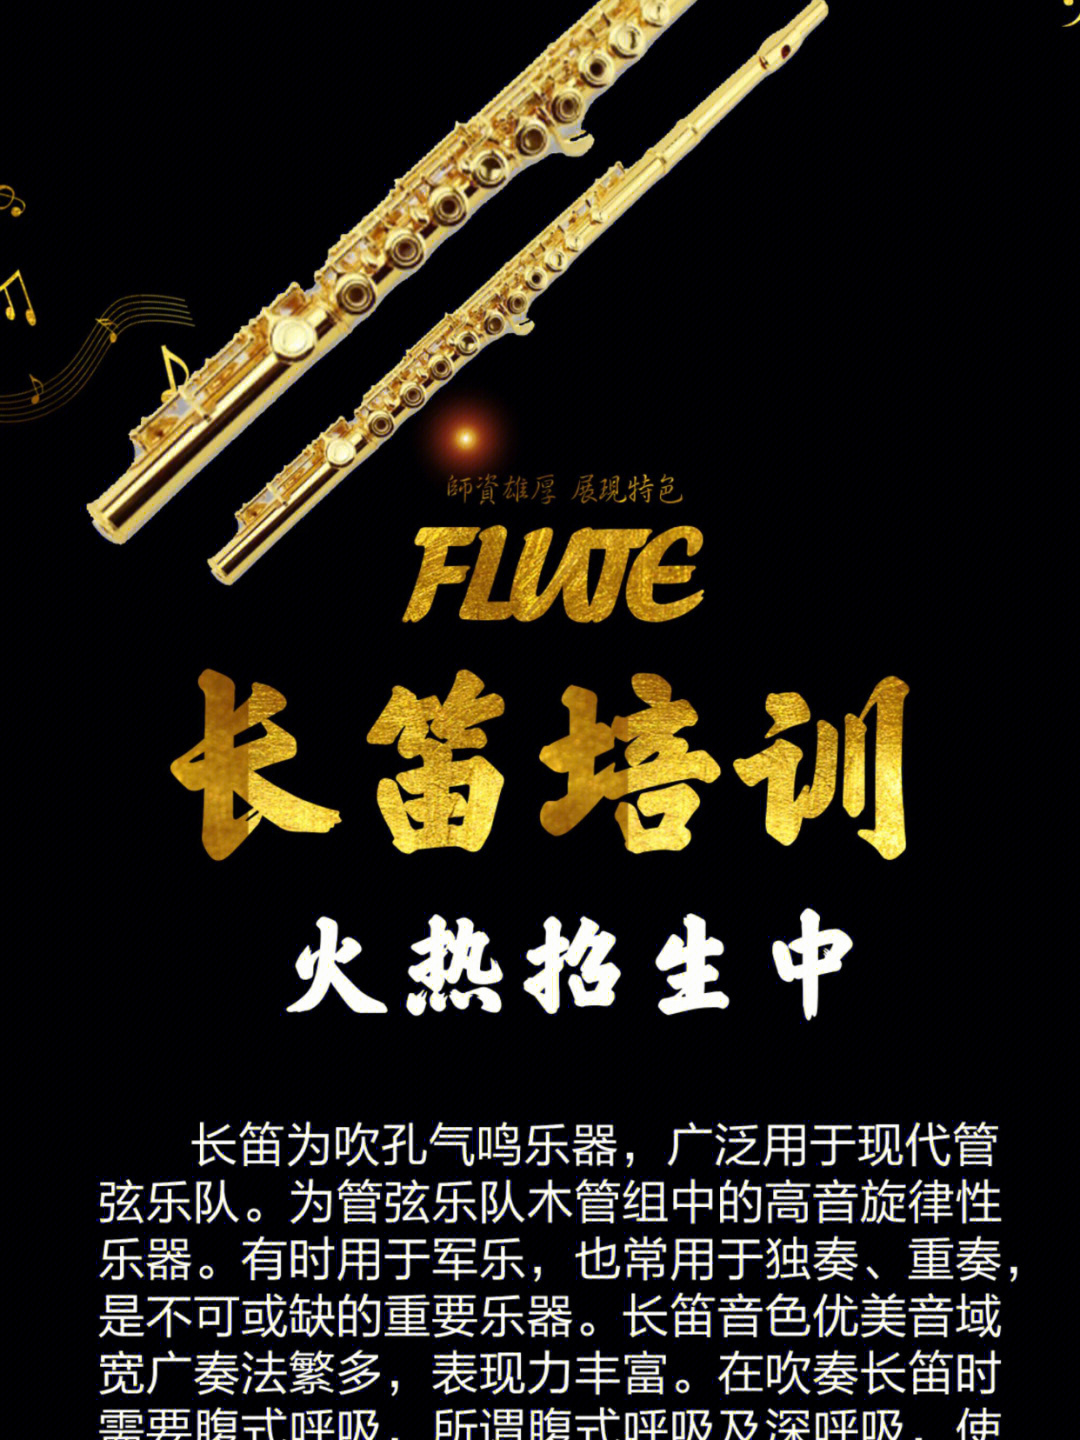 长笛是现代管弦乐和室内乐中主要的高音旋律乐器,属于木管乐